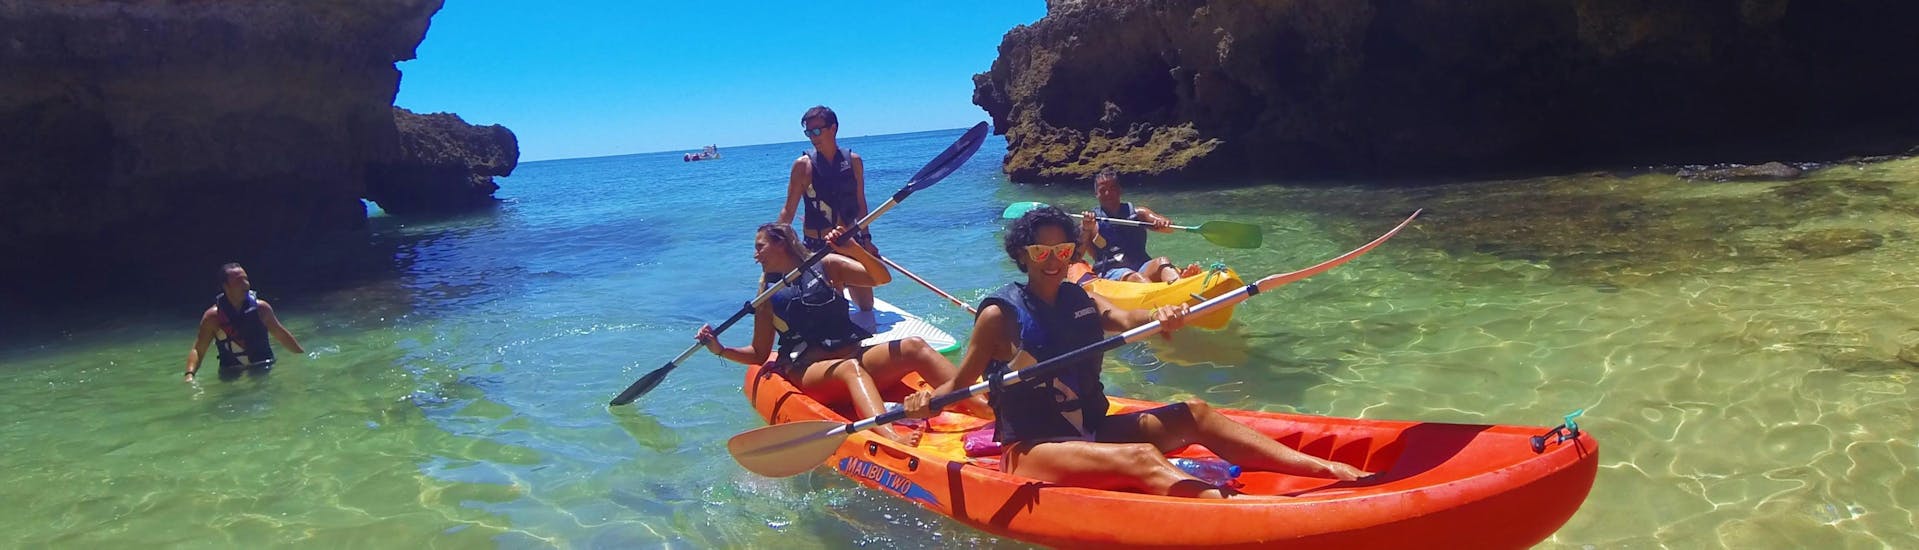 En un Kayak a las cuevas y playas salvajes desde Armação de Pêra, los participantes del tour siguen a sus guias locales desde Moments Watersports Algarve a los tesoros escondidos en la costa